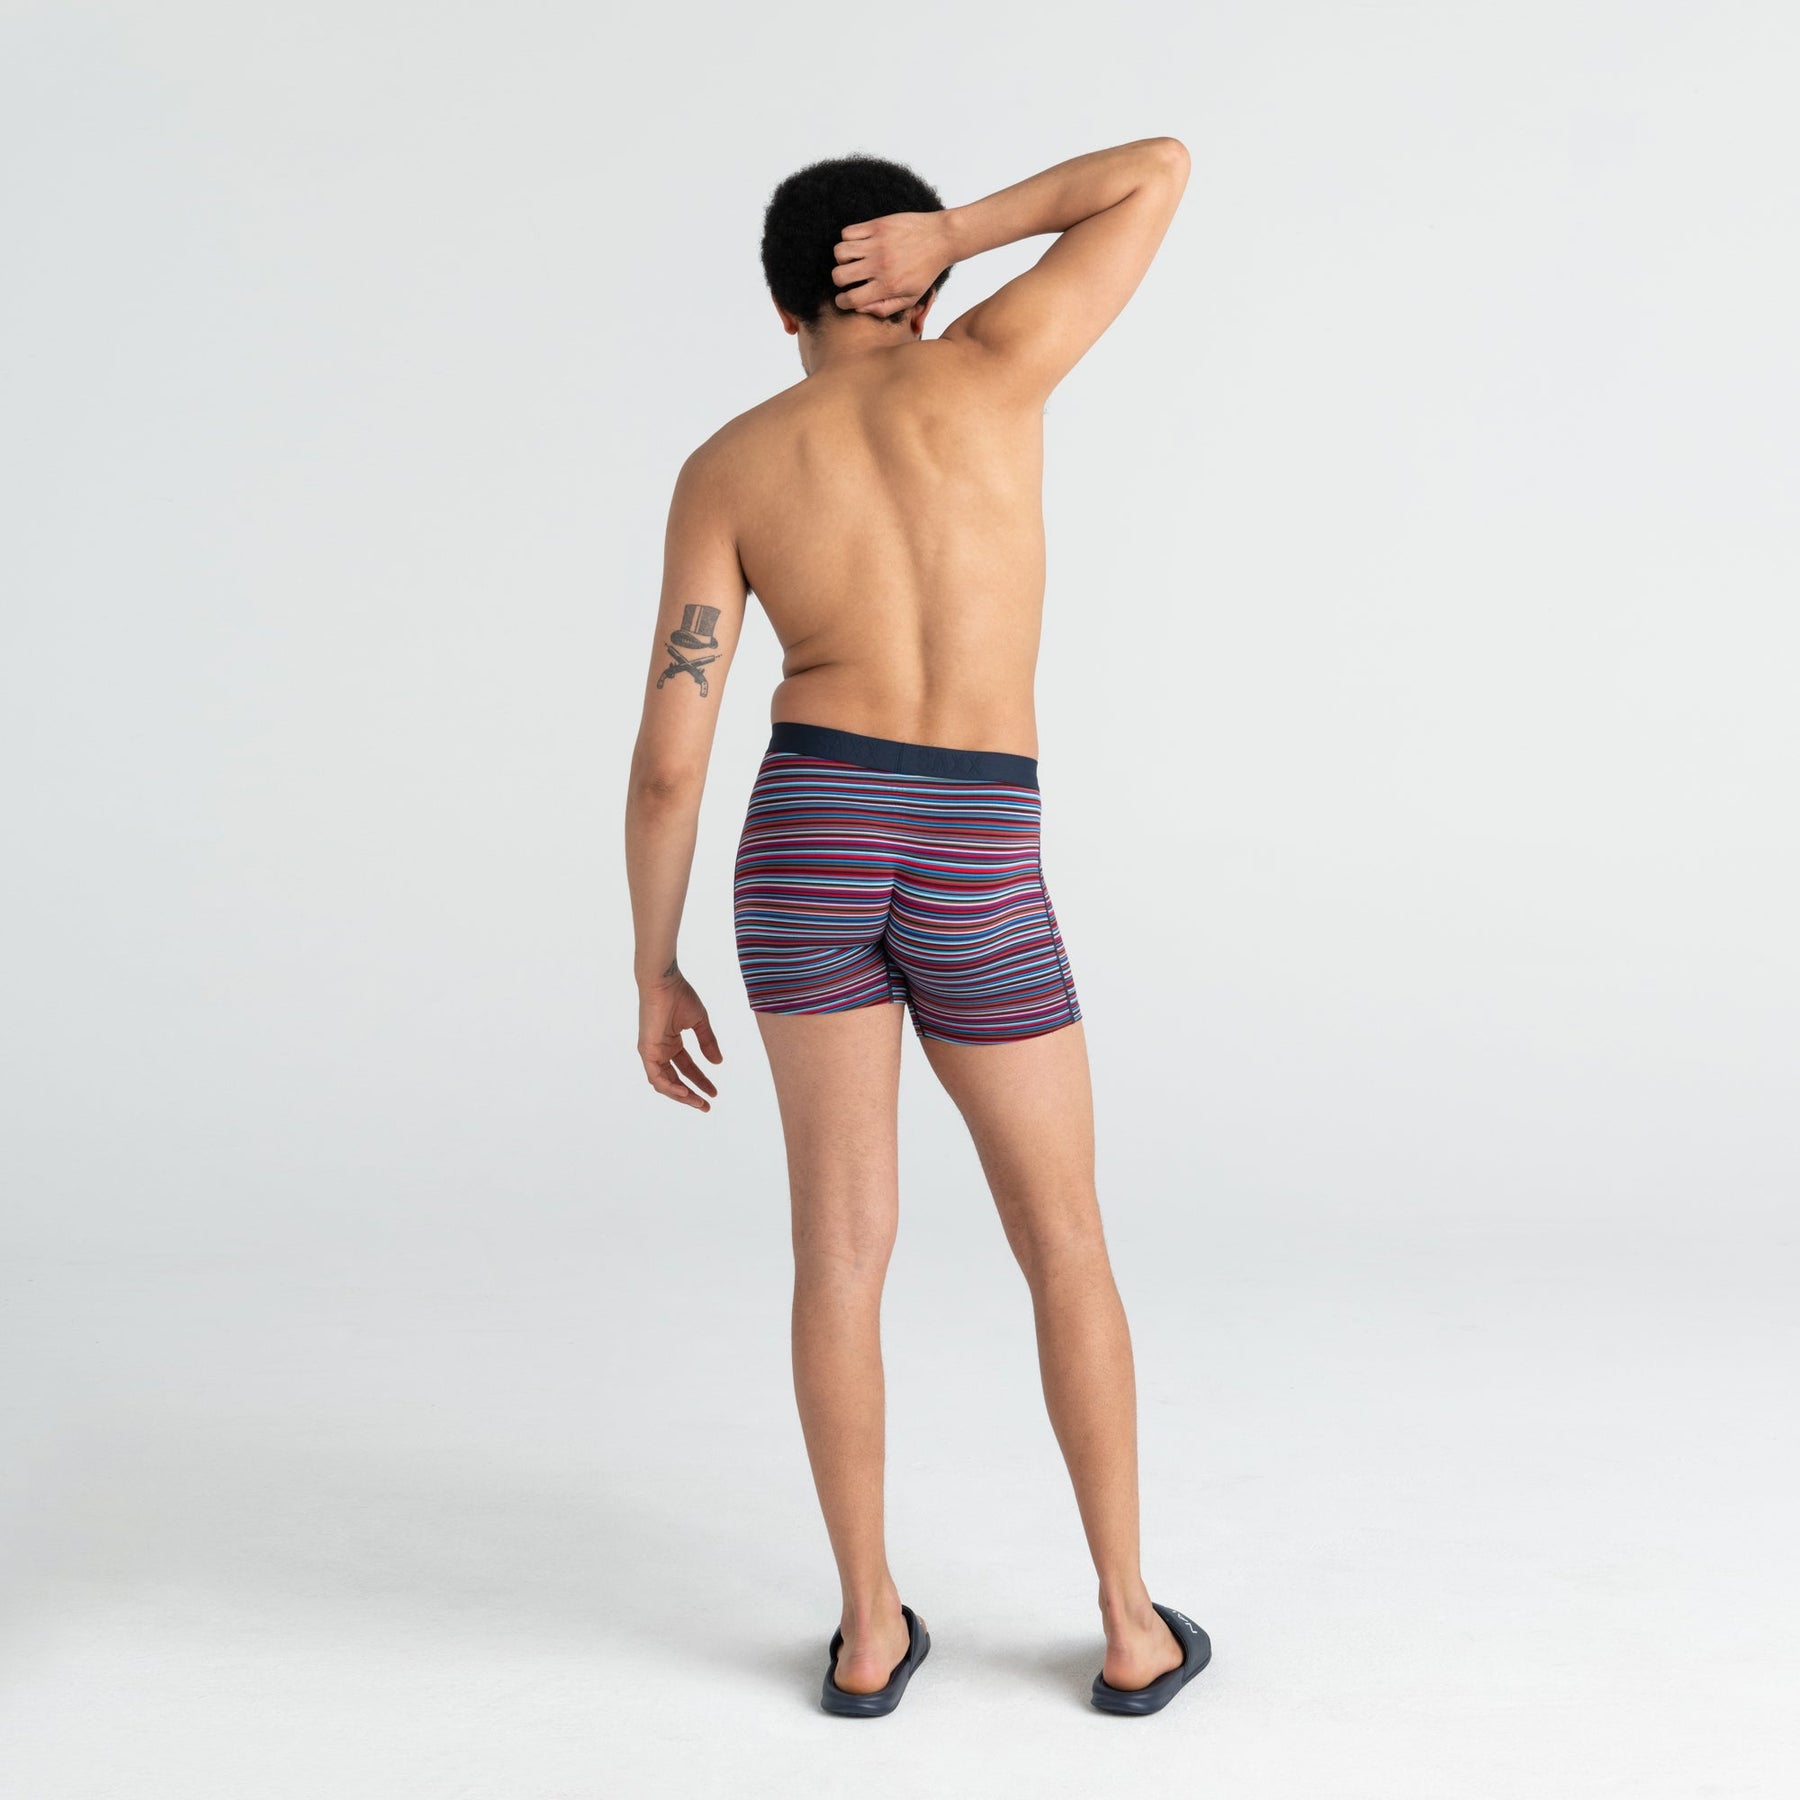 Sous-vêtement pour homme par Saxx | SXBM35 VBB | Machemise.ca, vêtements mode pour hommes